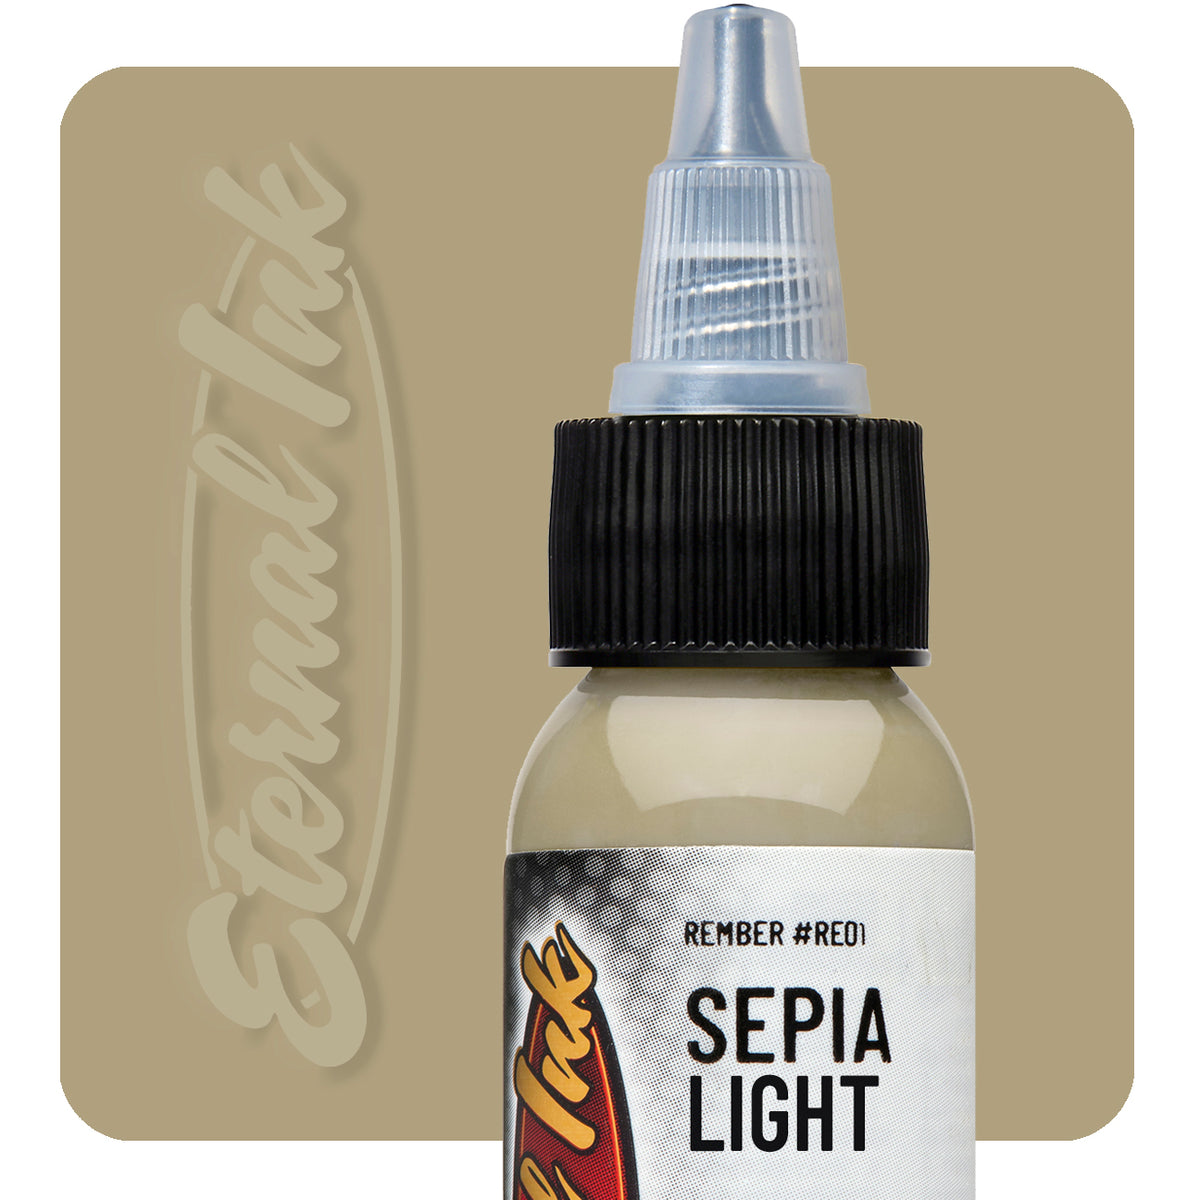 Sepia Light